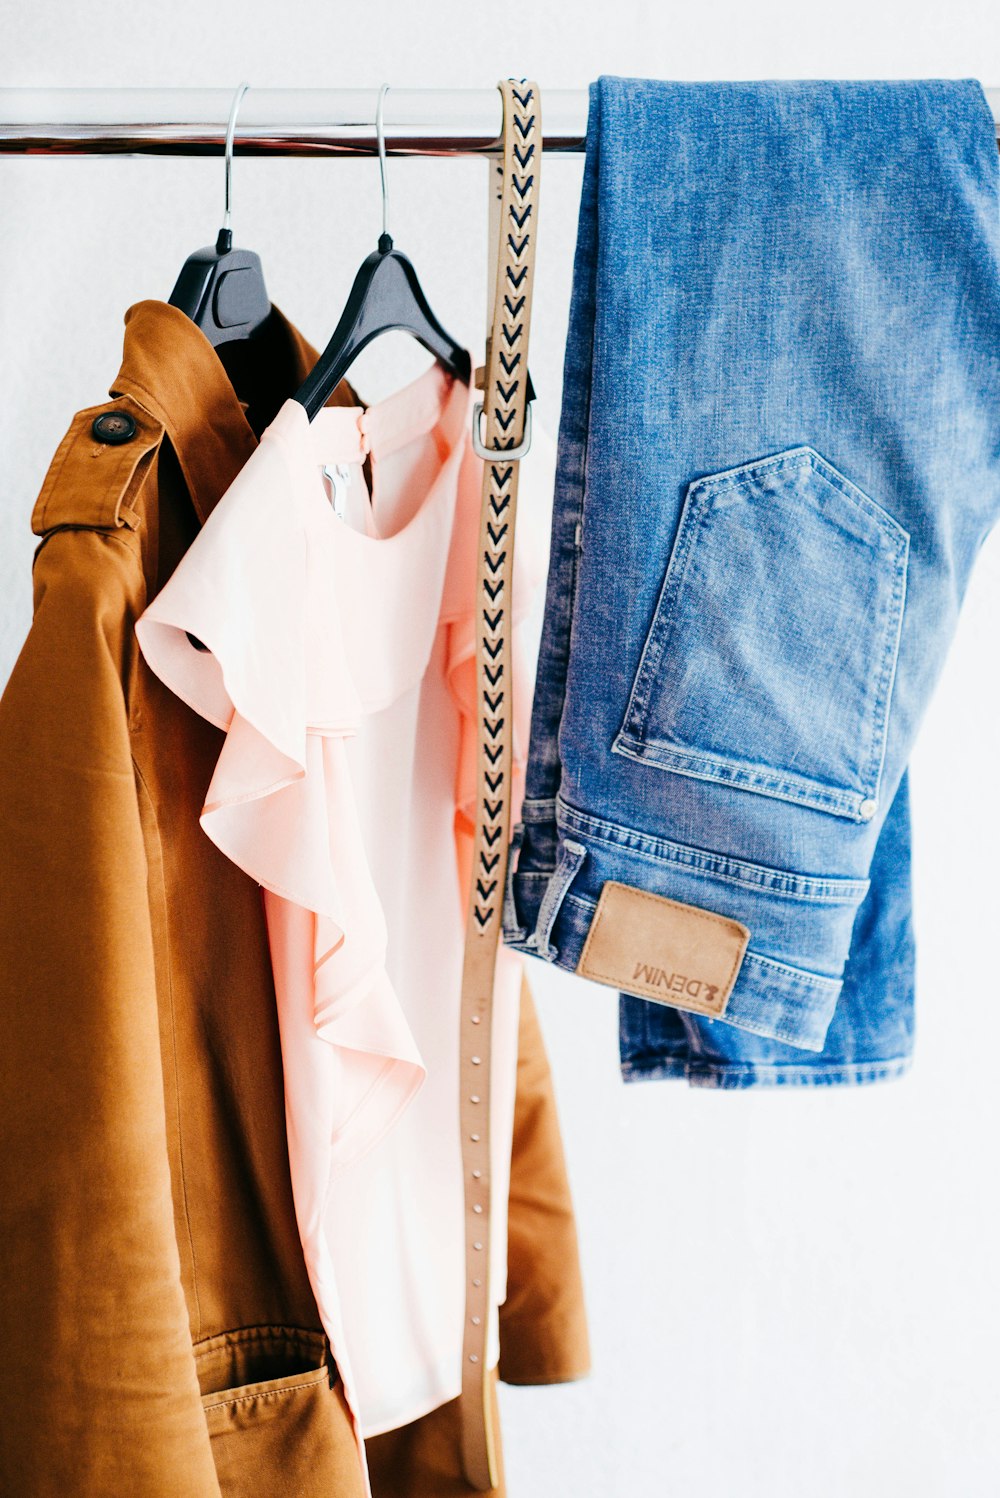 Vier verschiedene Kleidungsstücke für Frauen, die auf einem Kleiderständer aufgehängt sind